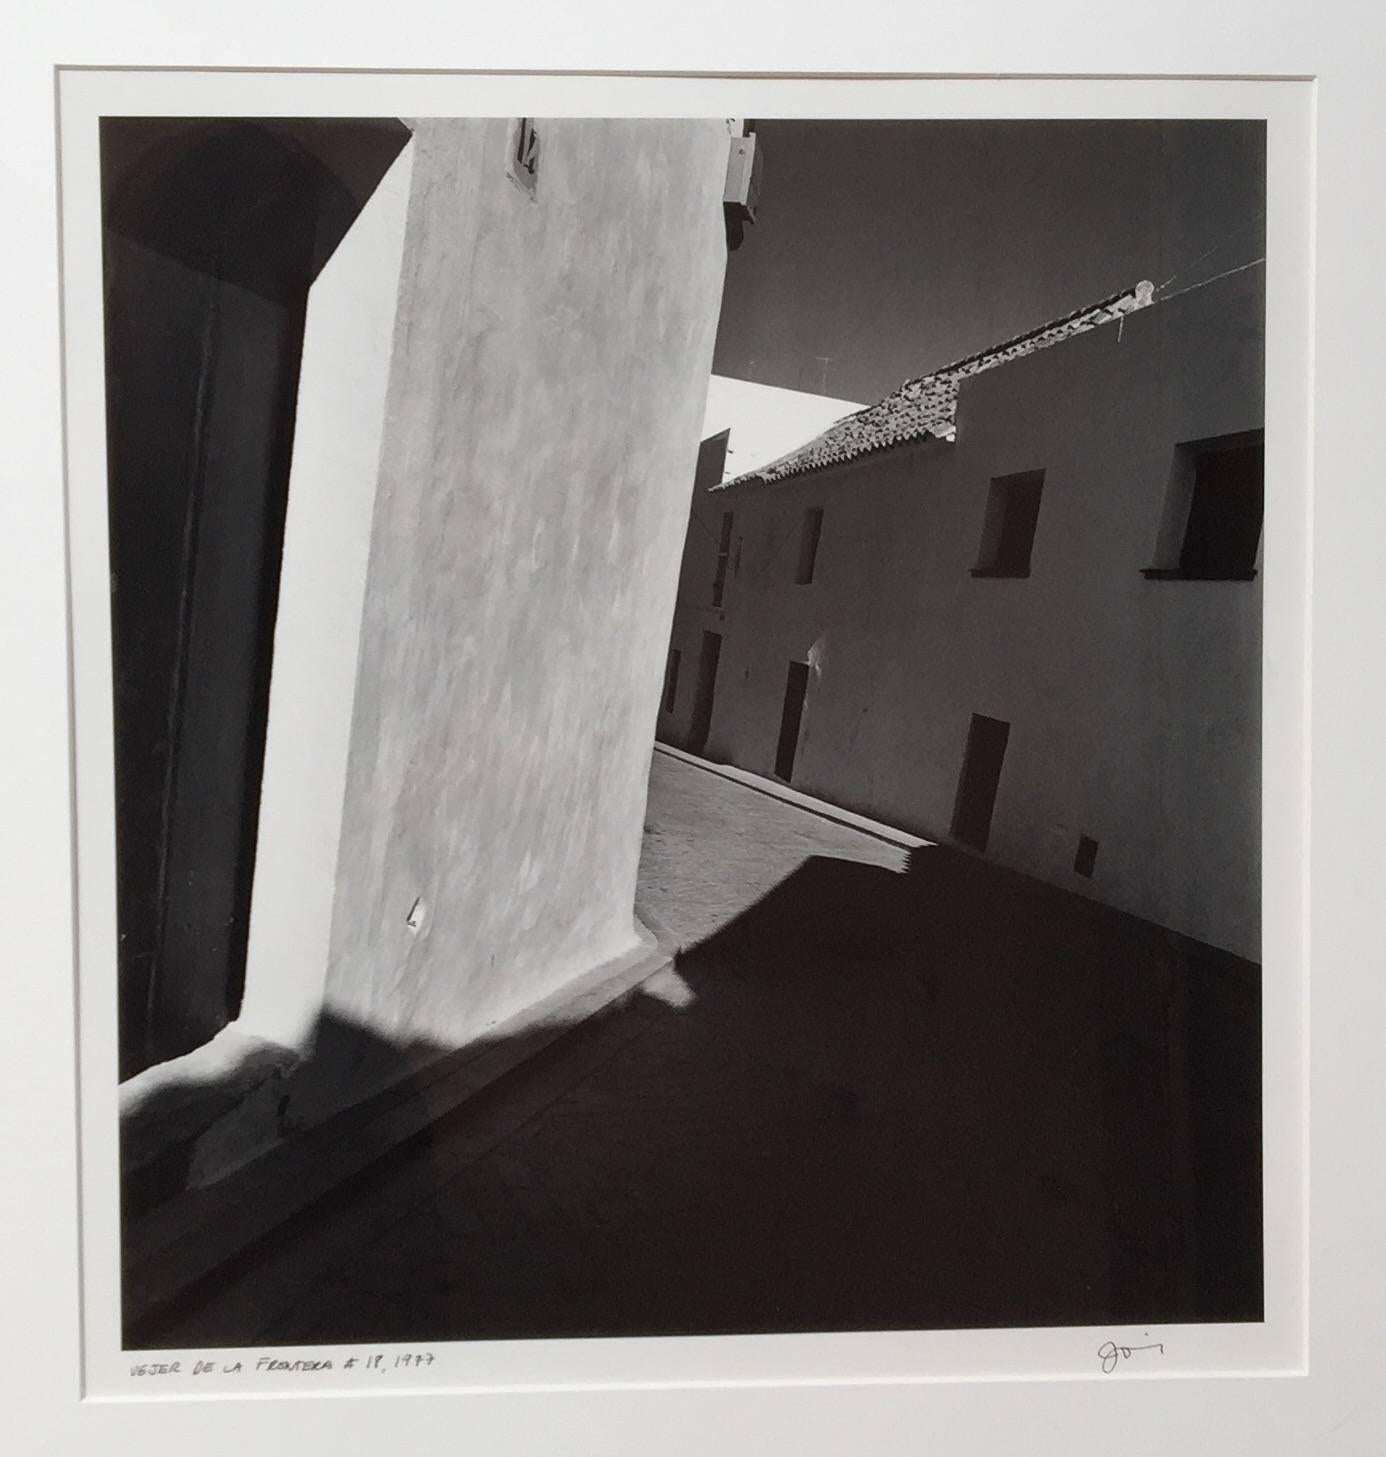 Jed Fielding Black and White Photograph - Vejer de la Frontera #18, Silver Gelatin Print, 1977